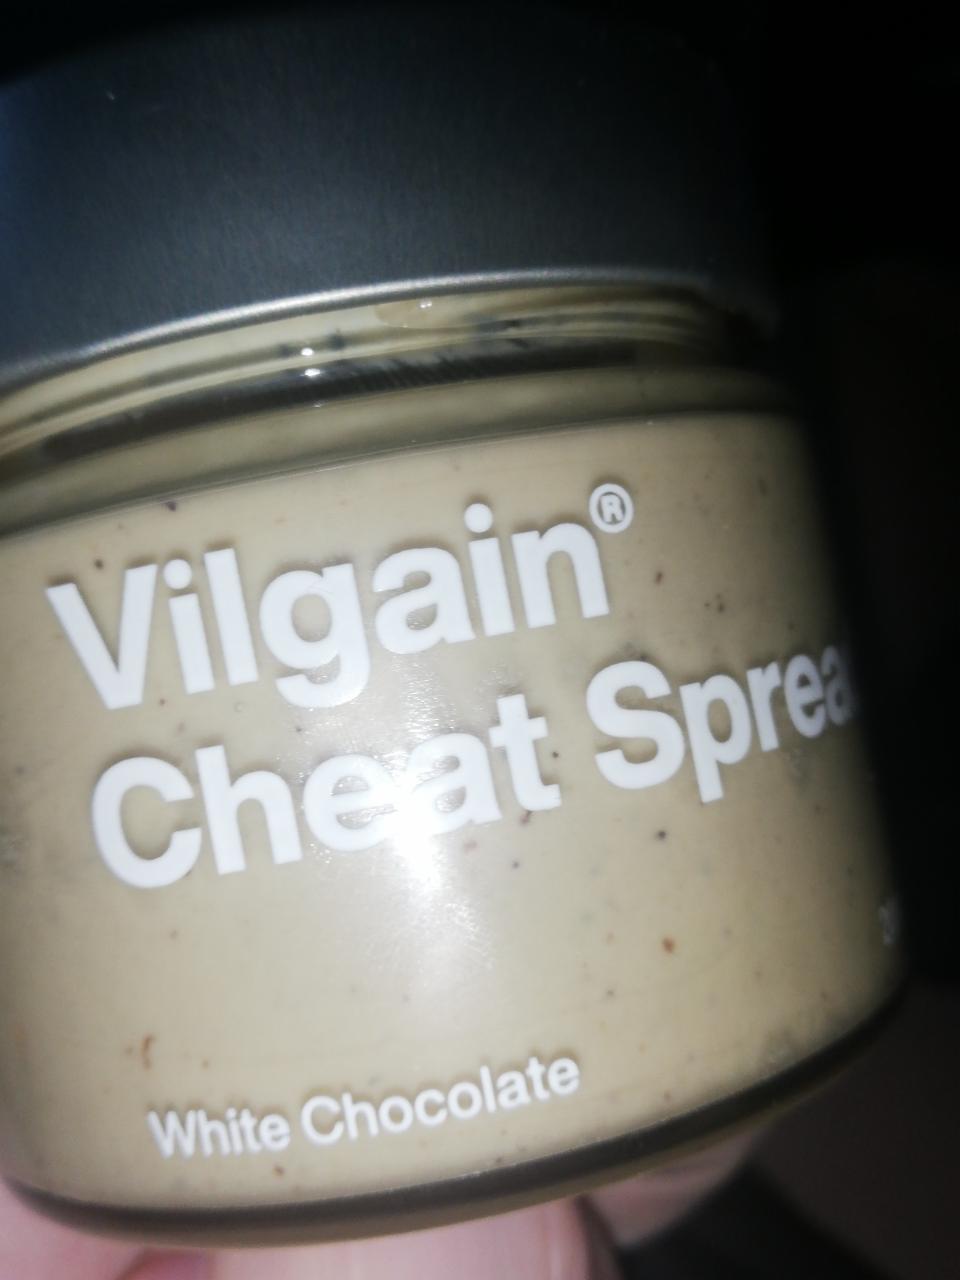 Fotografie - Vilgain cheat spread White chocolate